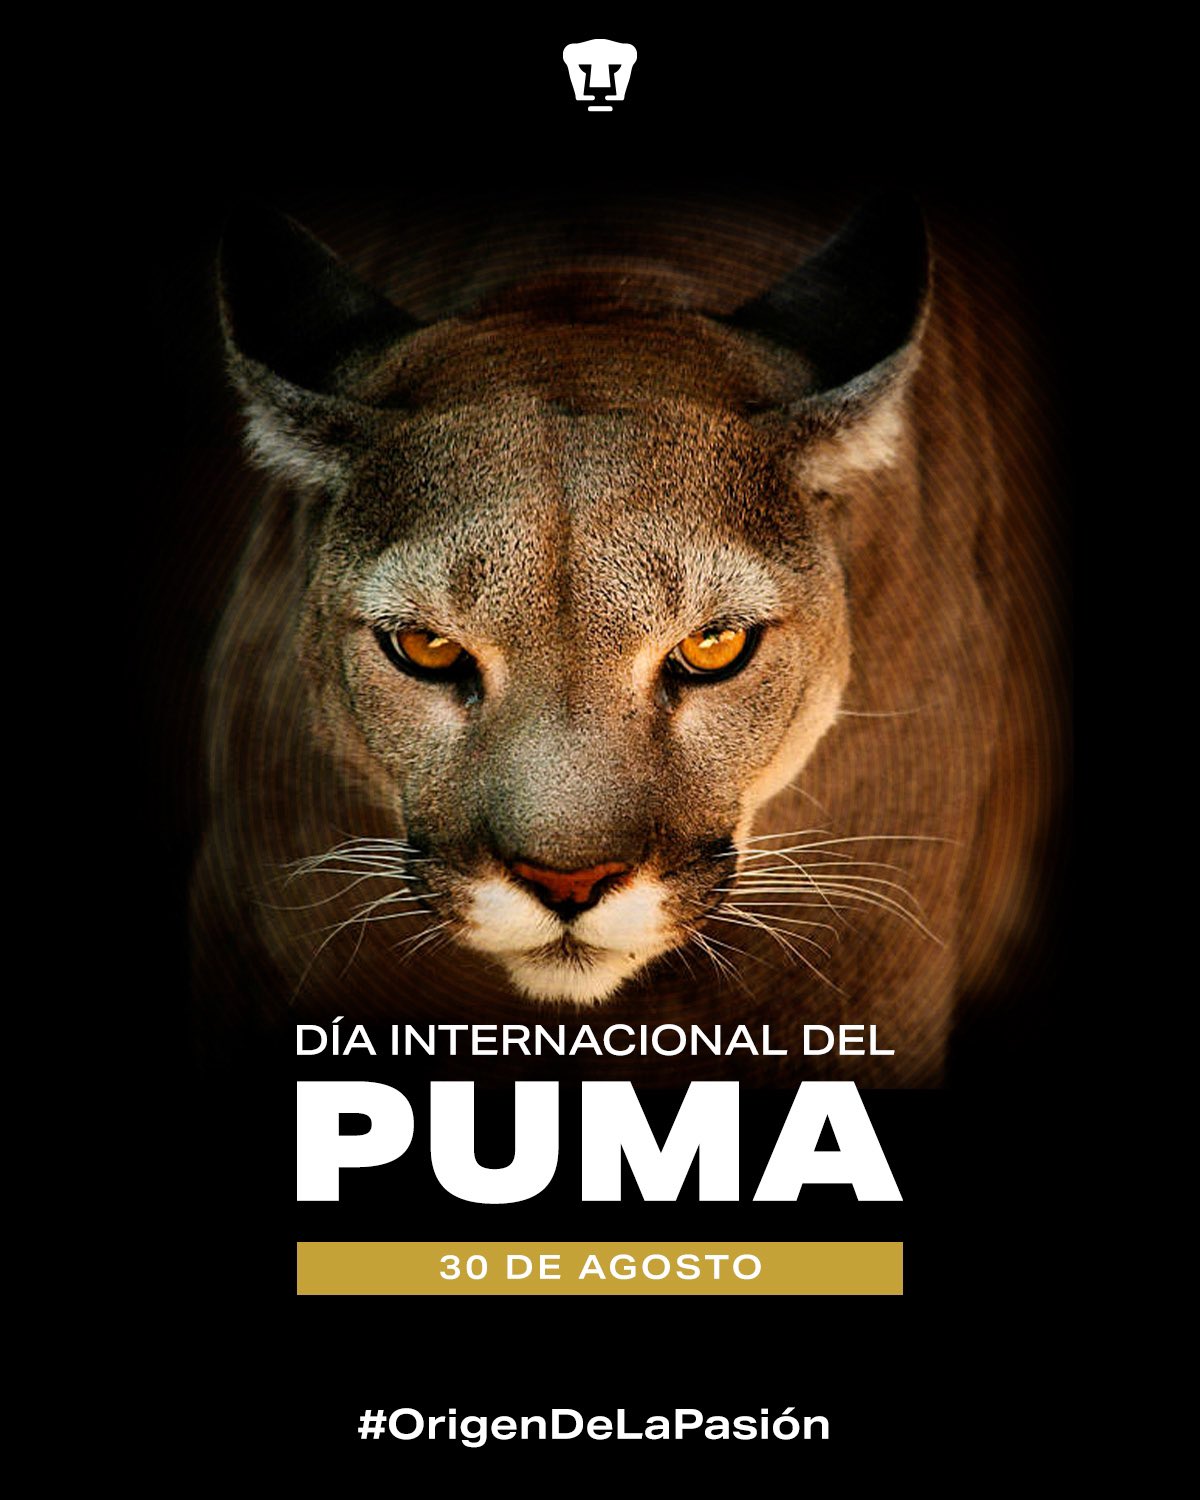 PUMAS on "Es un día muy especial para nosotros, hoy es el #DíaInternacionalDelPuma, mascota de la @UNAM_MX, símbolo de nuestra garra y tenacidad. 🐾 #OrigenDeLaPasión #SoyDePumas https://t.co/1E6jg6QOpw" / Twitter